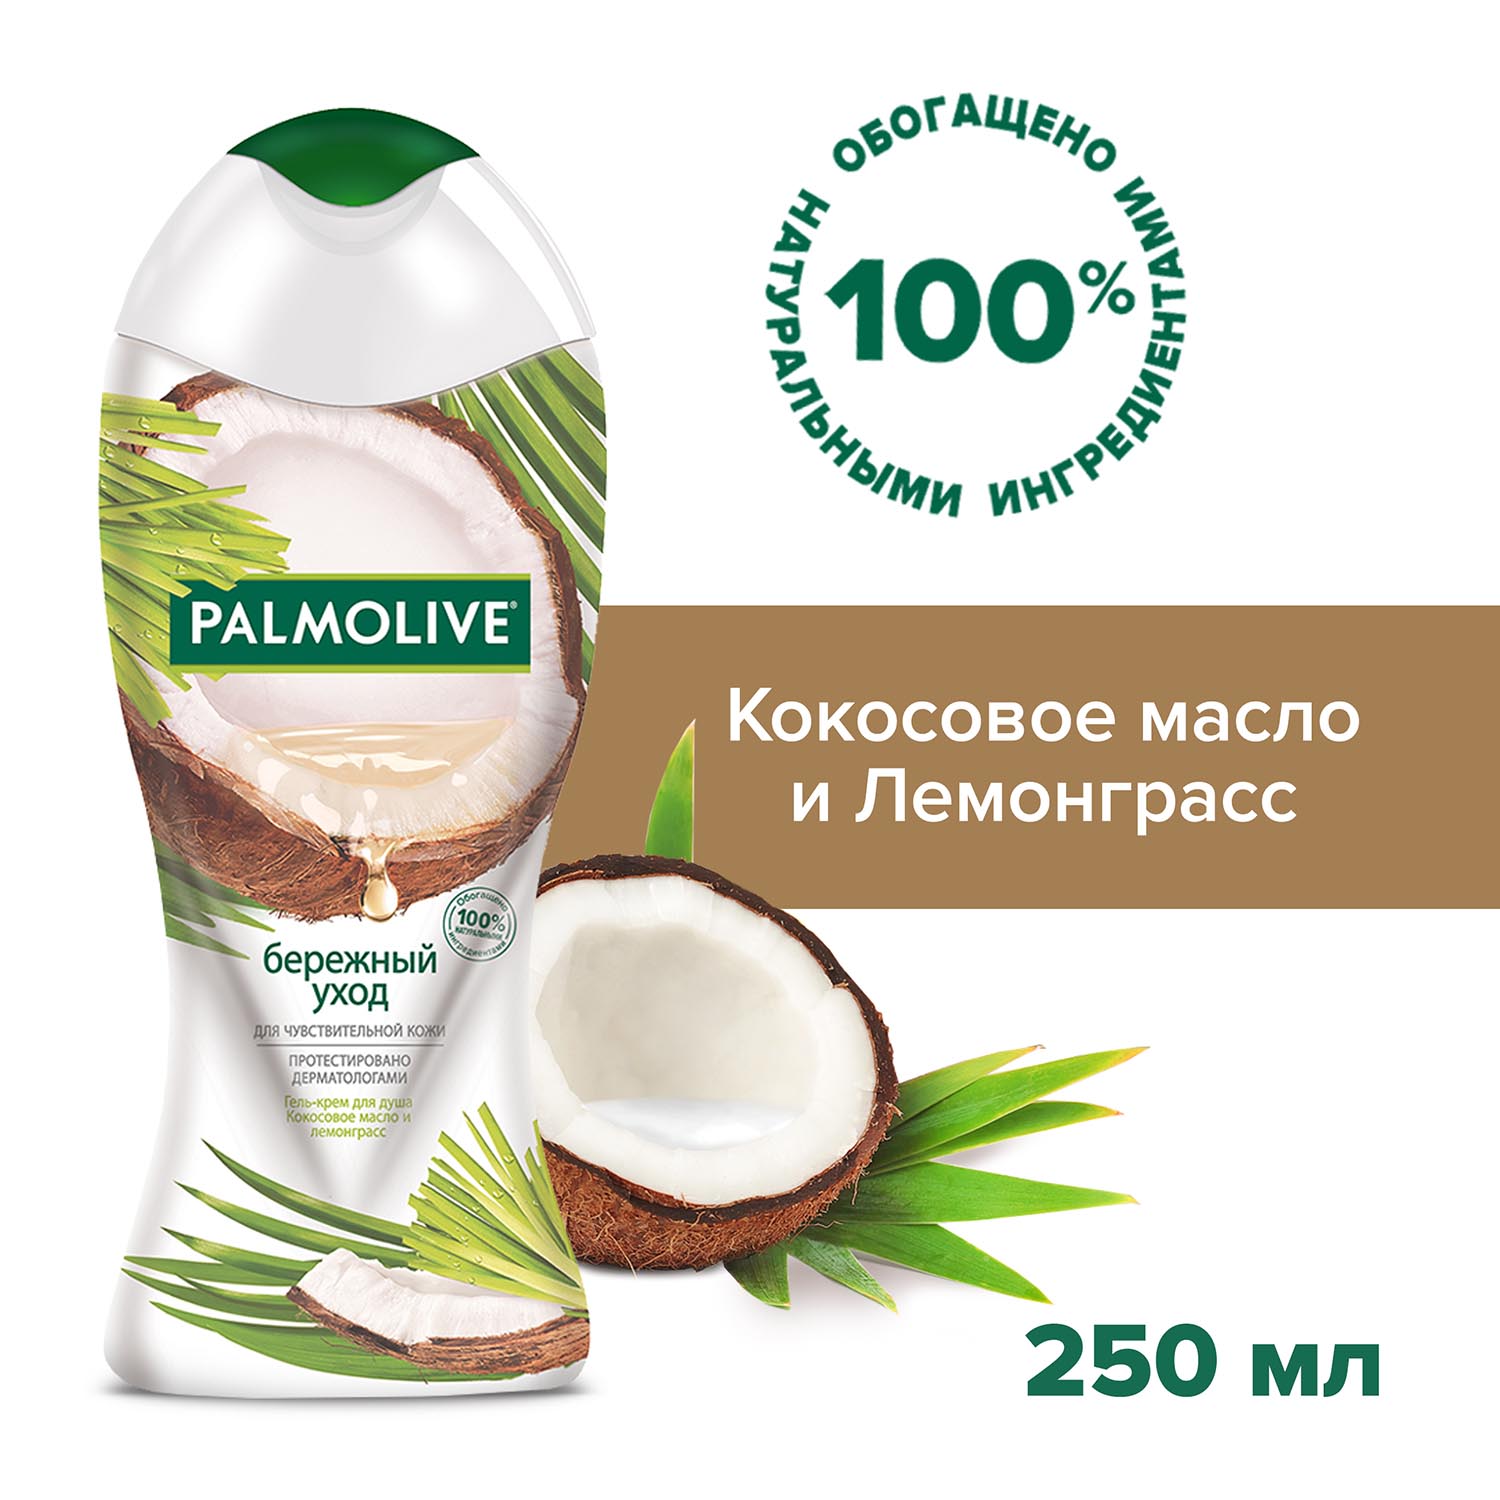 Гель - крем для душа женский Palmolive Бережный Уход с кокосовым маслом и лемонграссом для чувствительной кожи, 250 мл